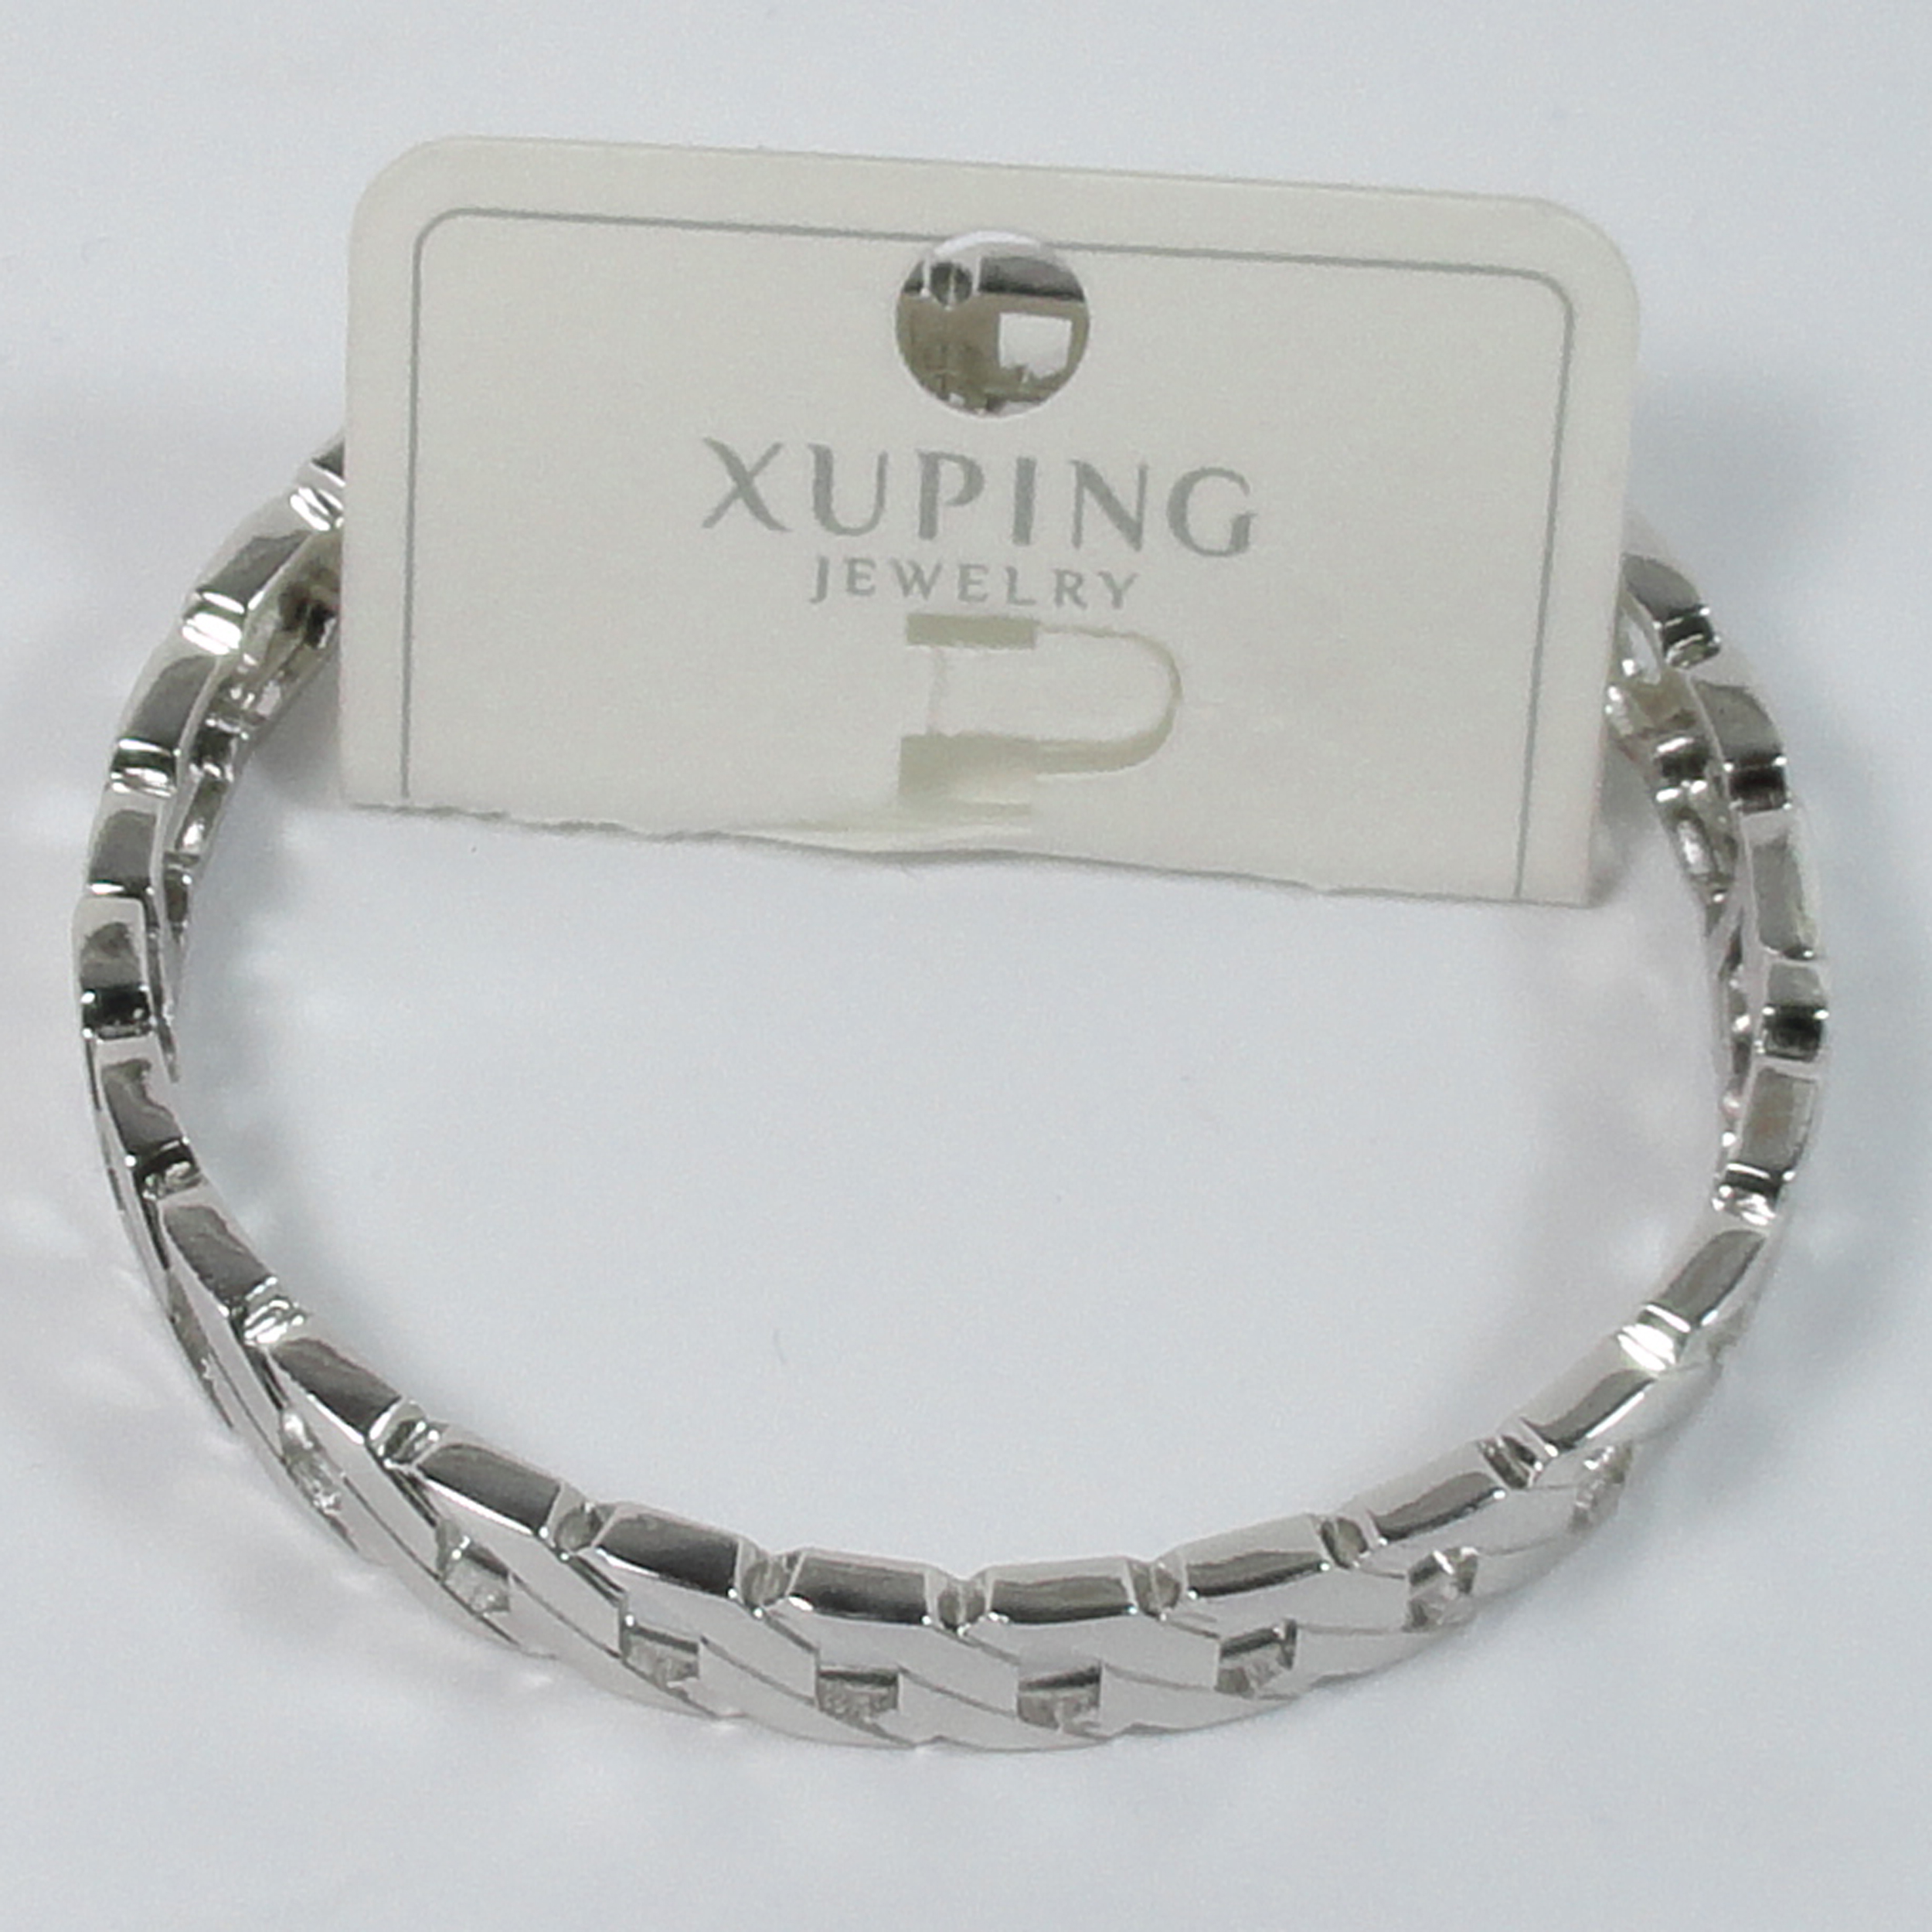 دستبند زنانه ژوپینگ مدل تانیا کد AM30 -  - 2